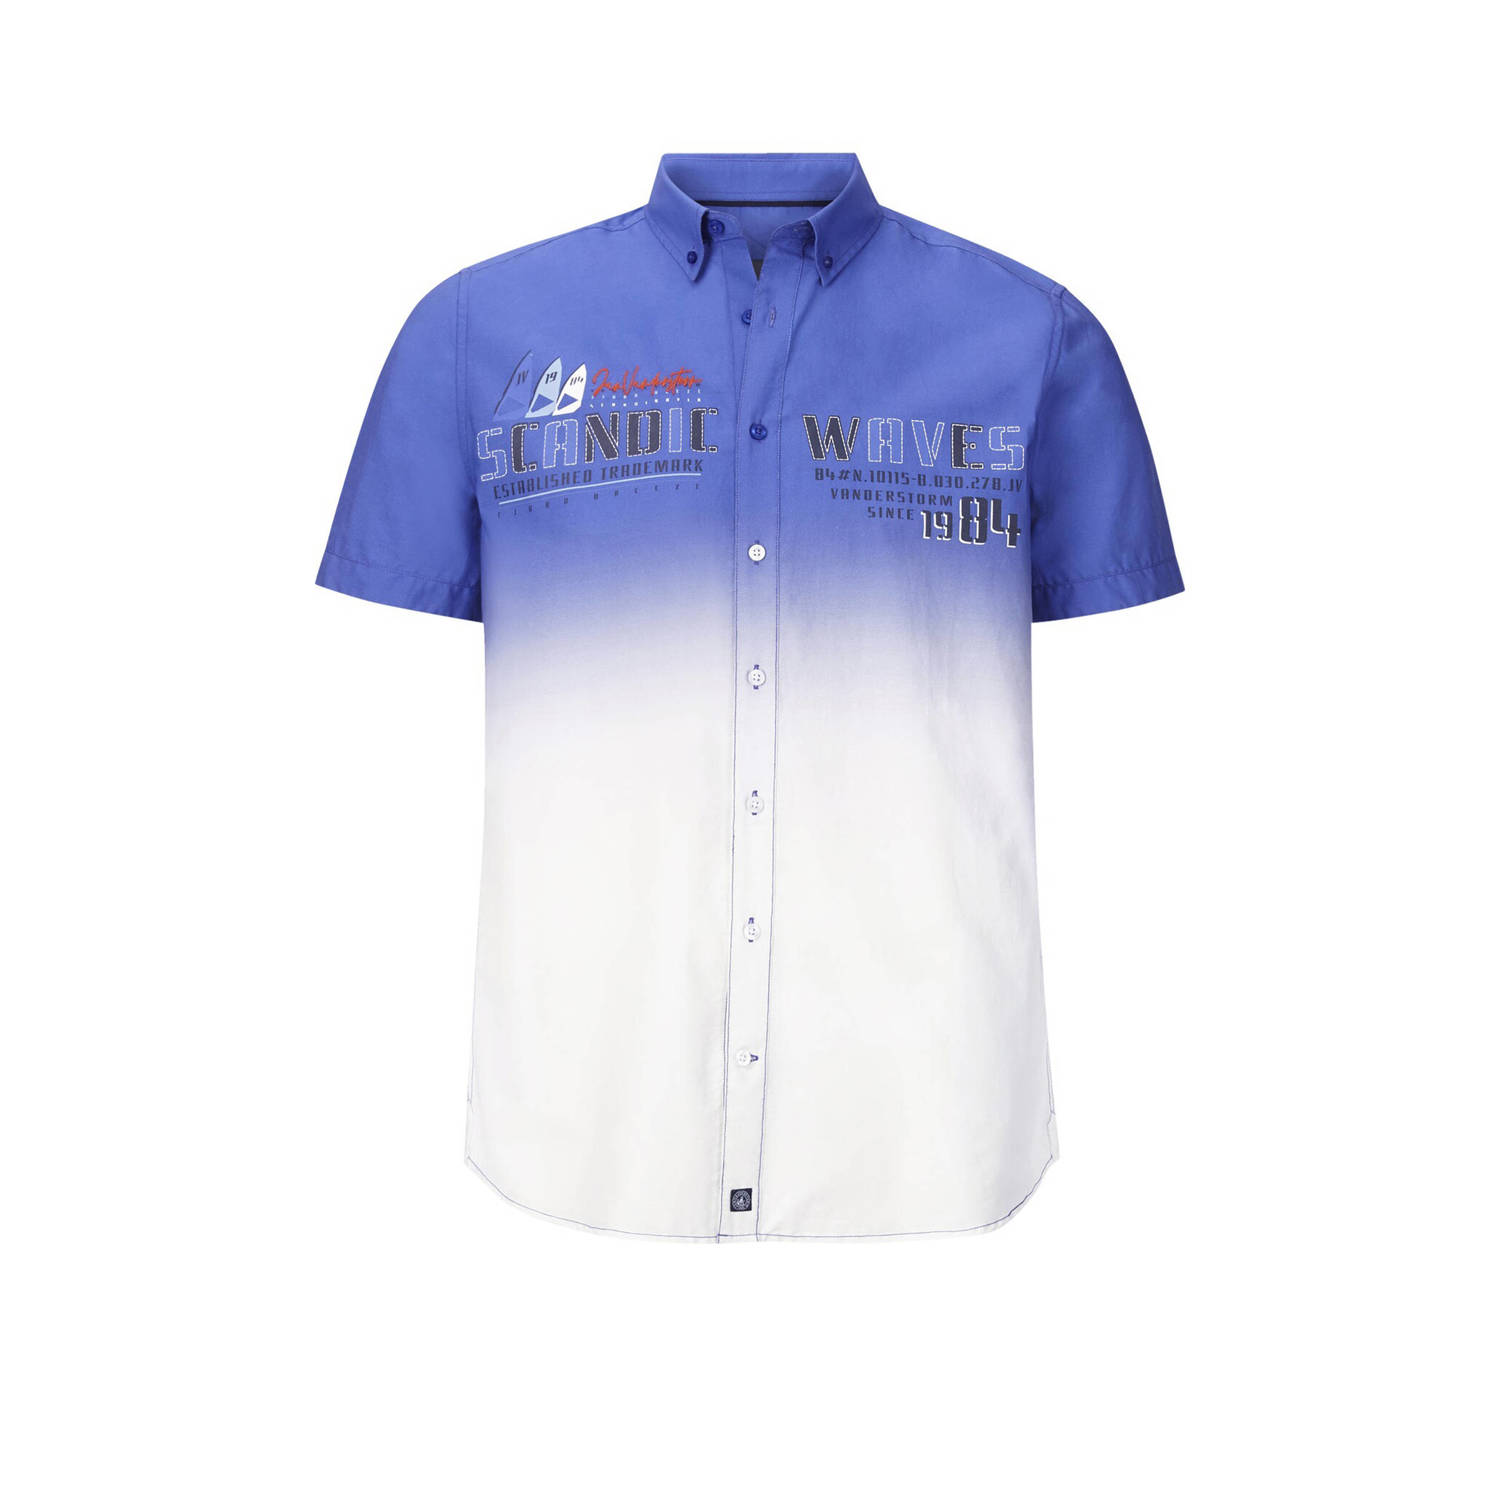 Jan Vanderstorm +FIT Collectie loose fit overhemd ODDI Plus Size met printopdruk blauw wit